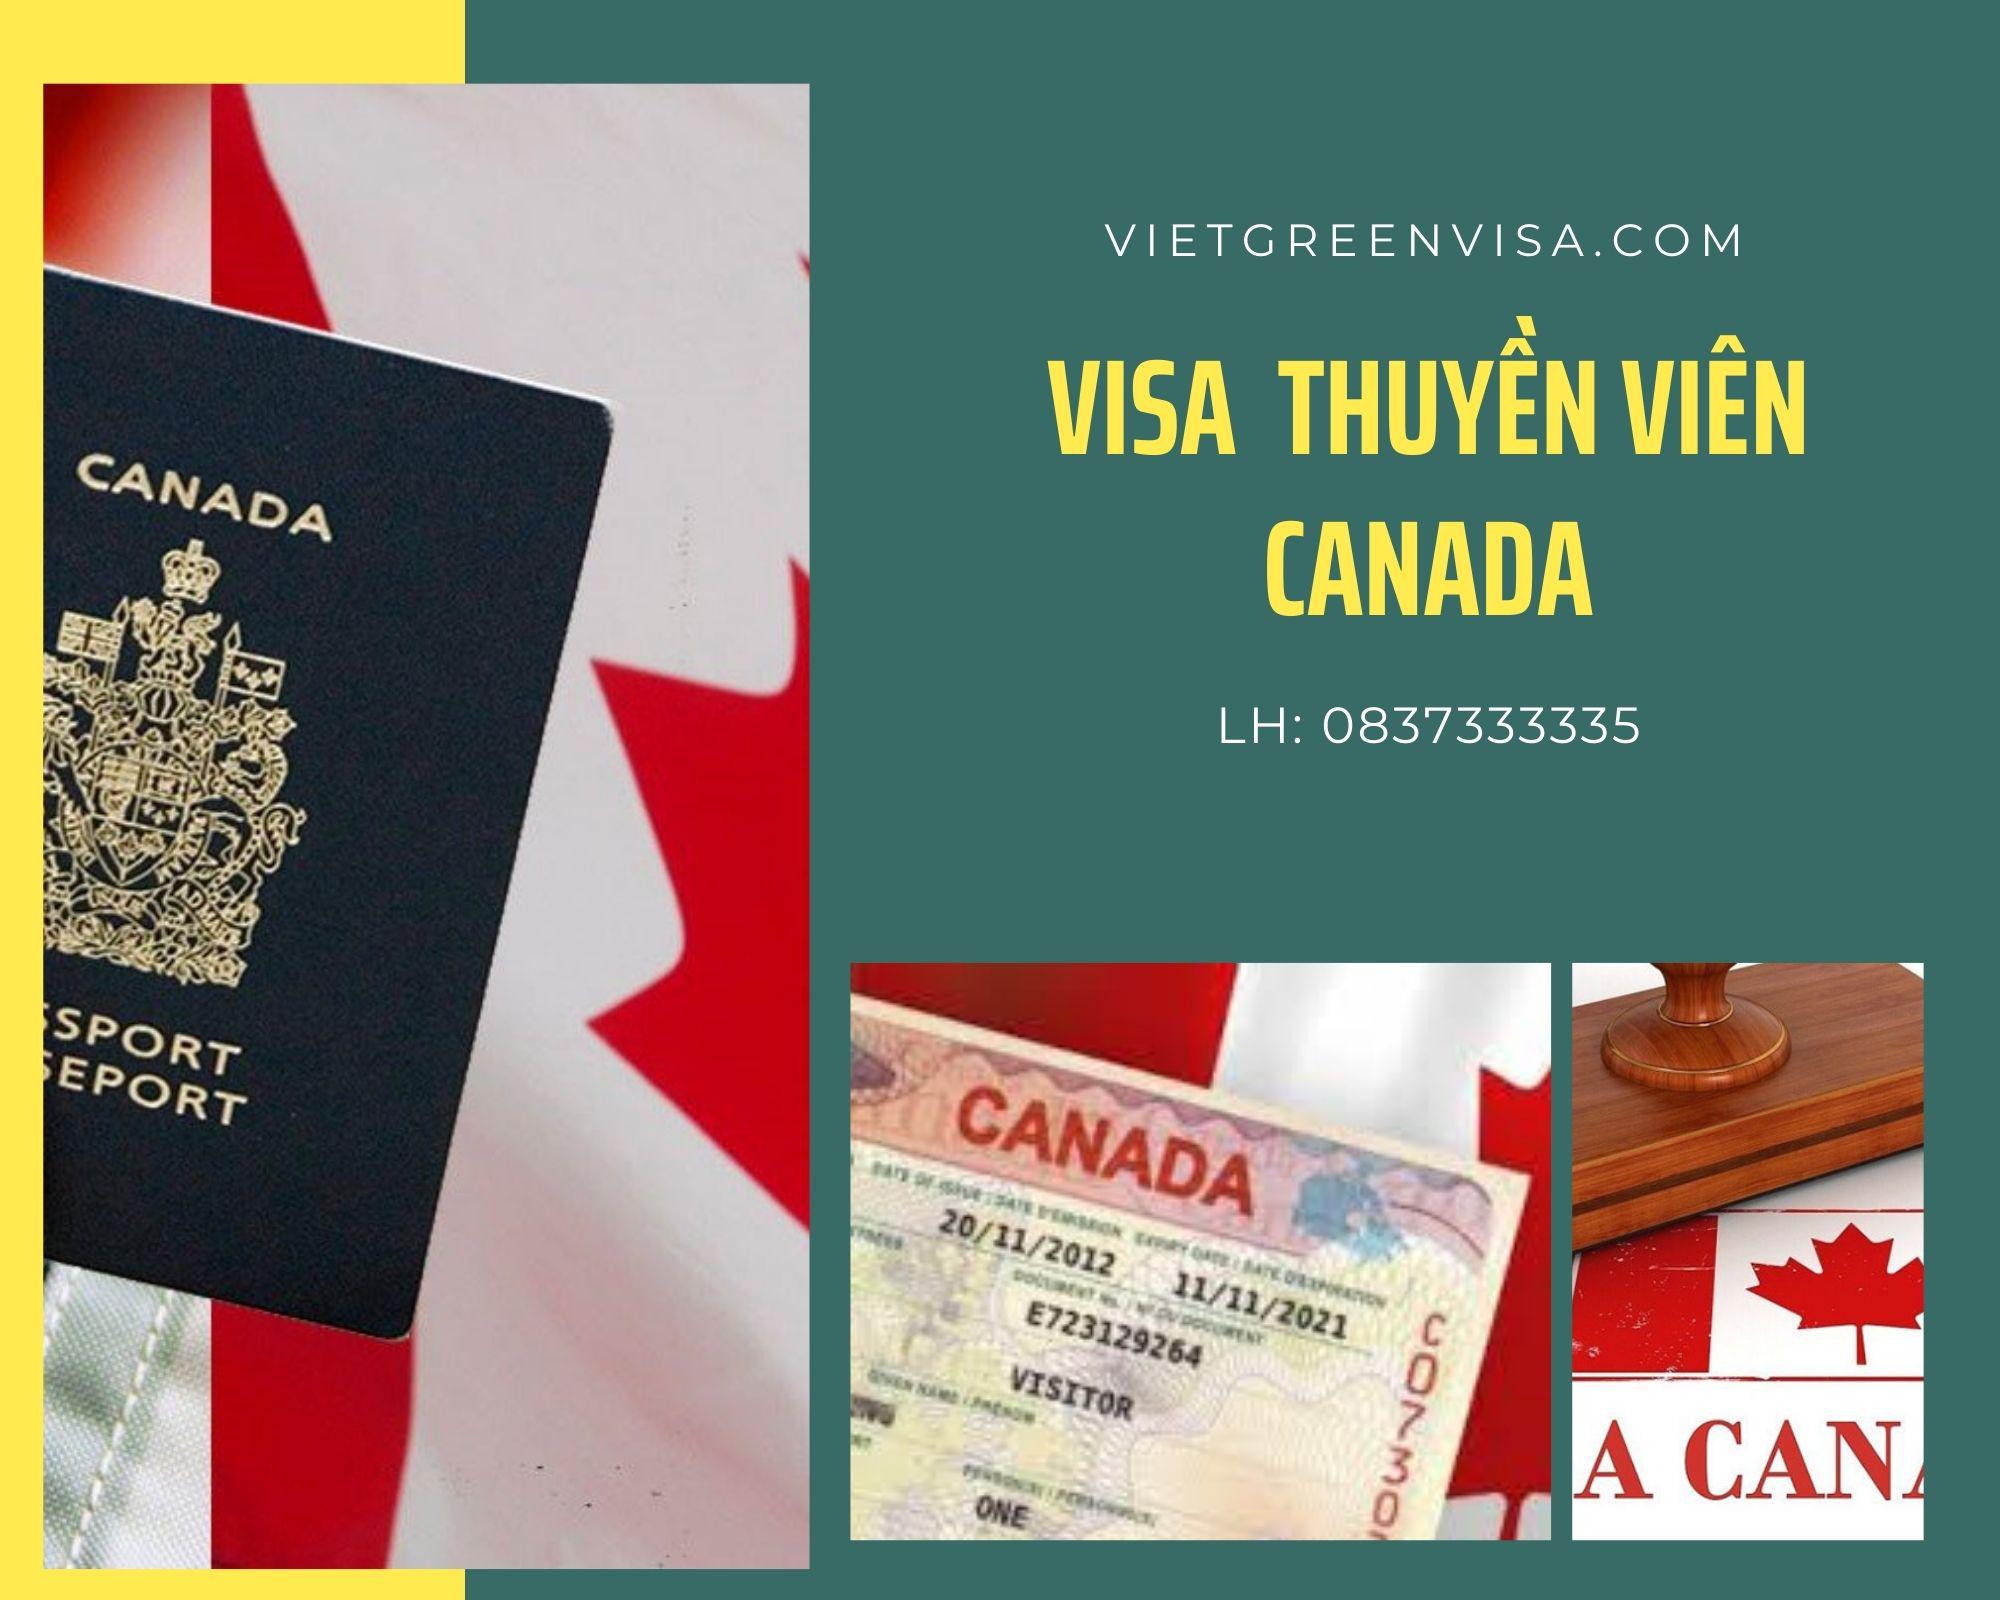 Dịch vụ Visa thuyền viên đi Canada: Nhận tàu, Lái tàu